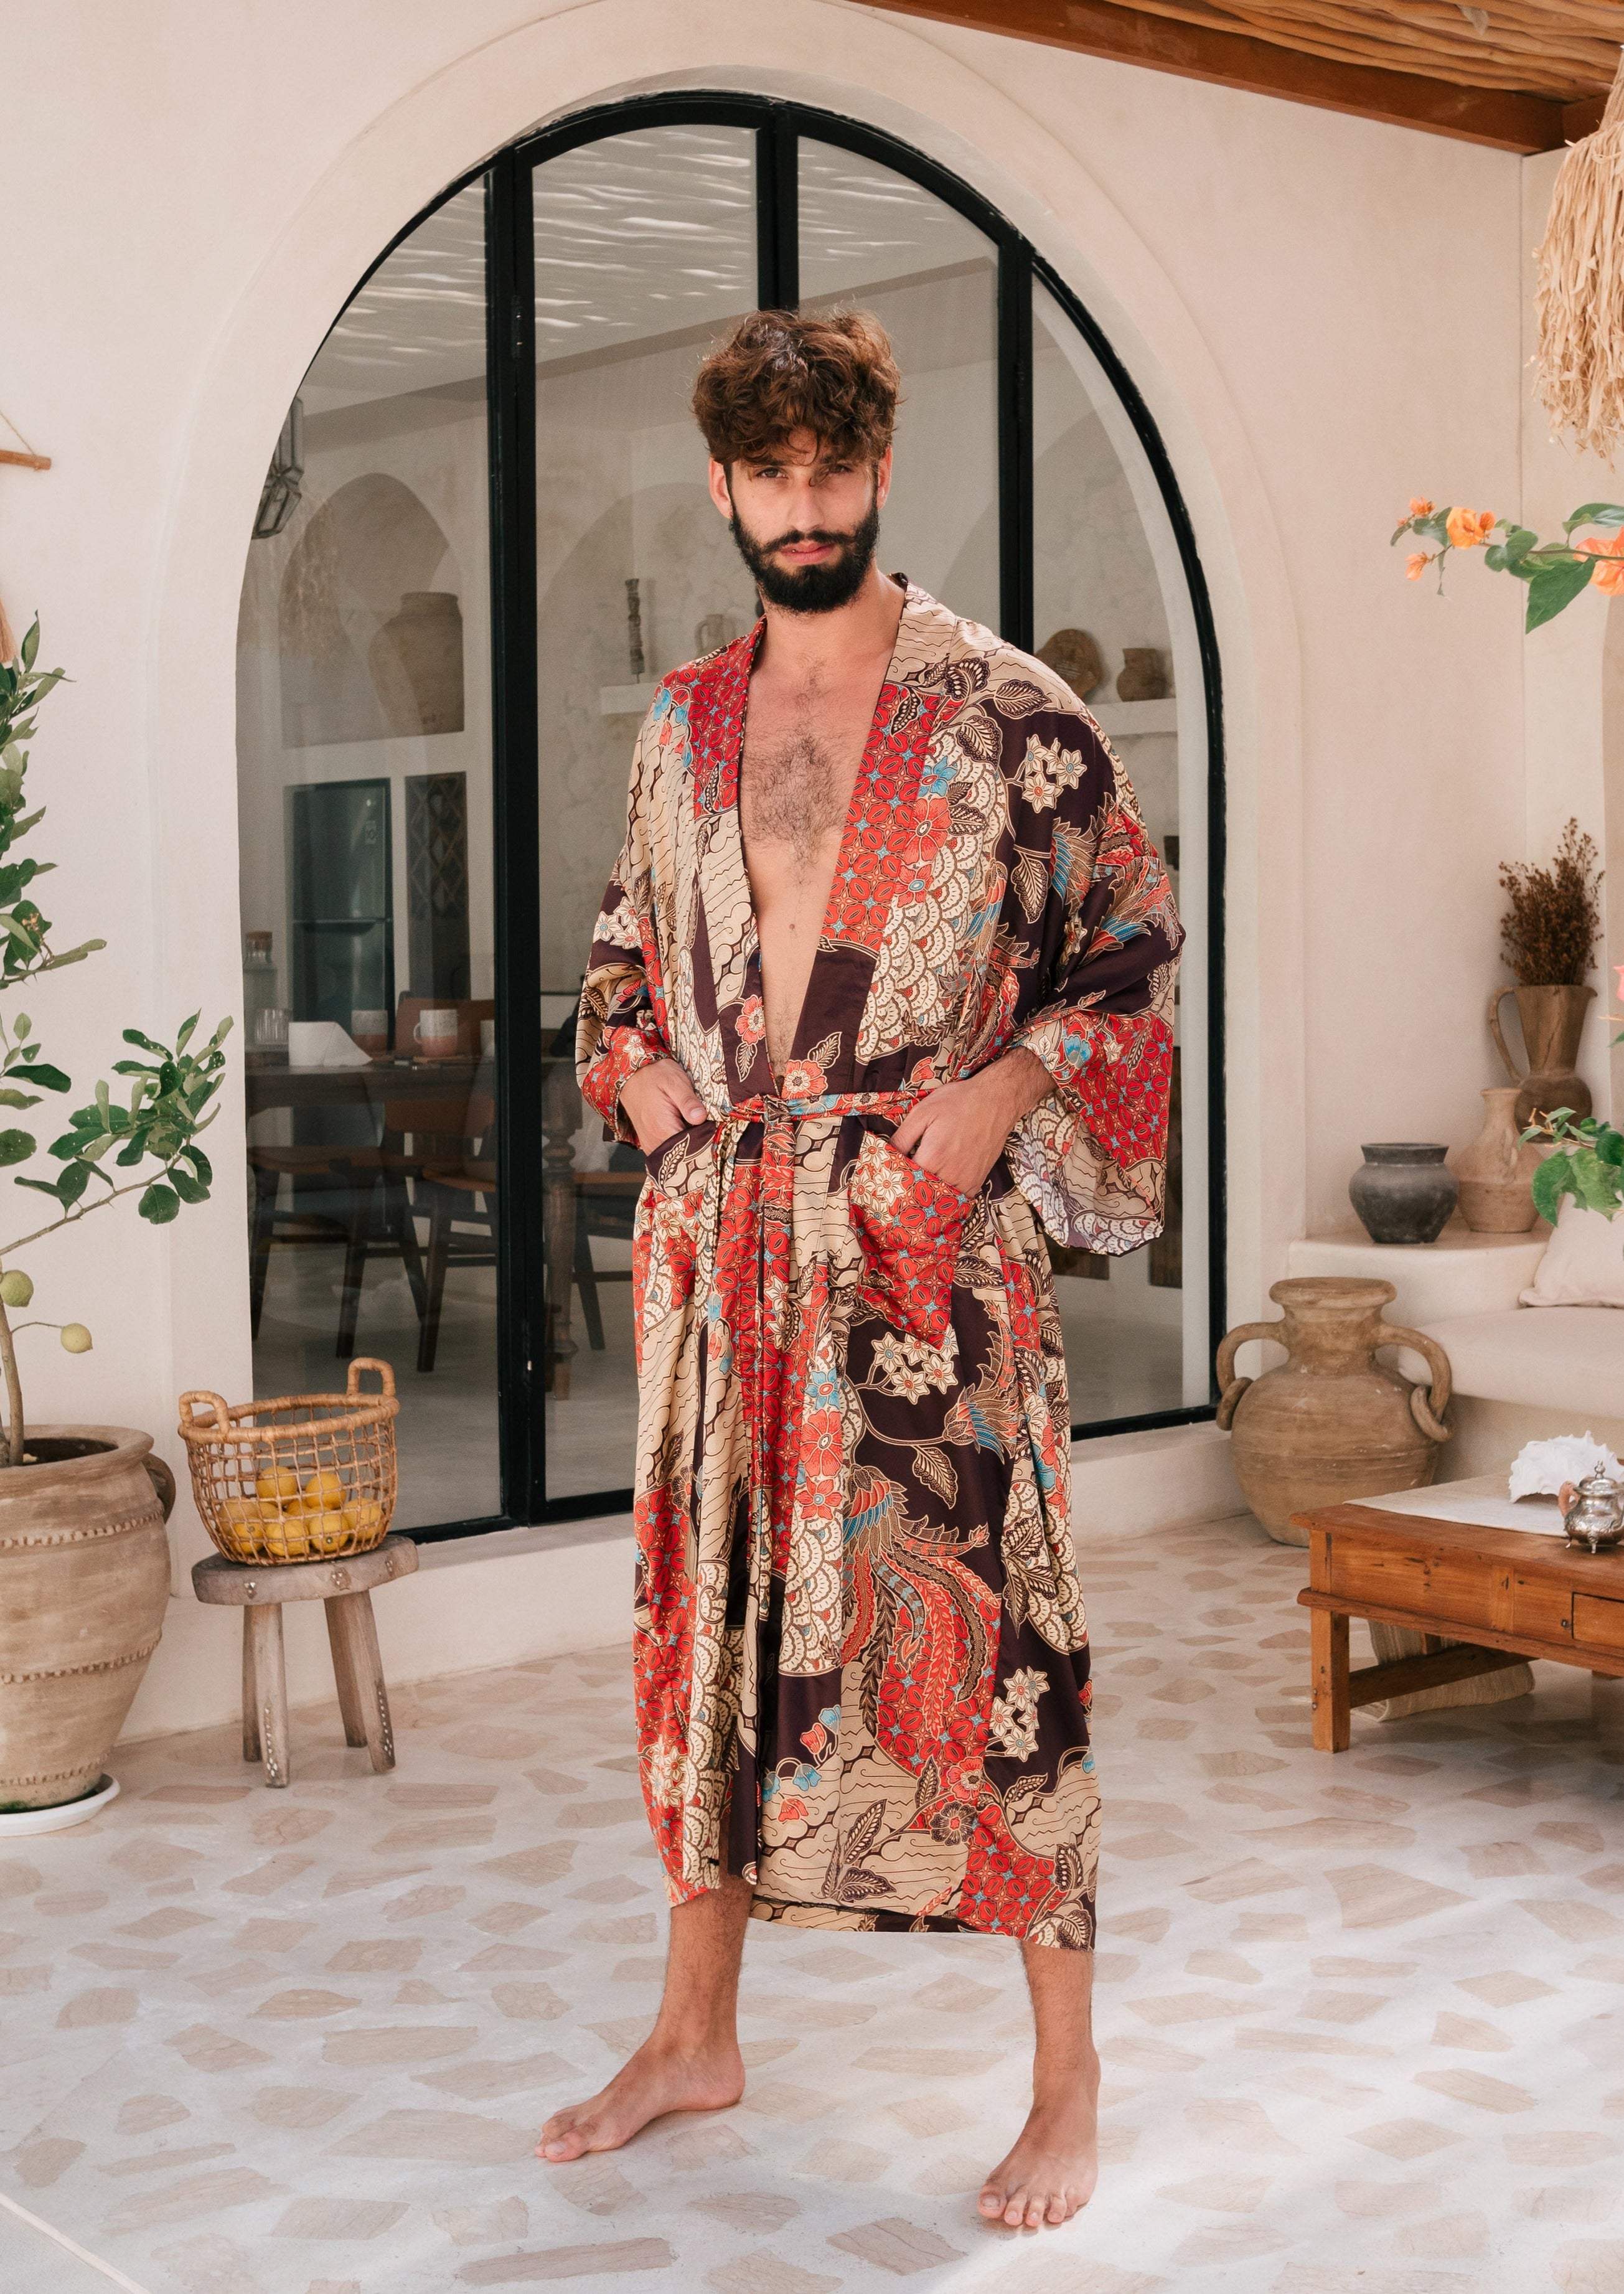 Silk Robe for Men 